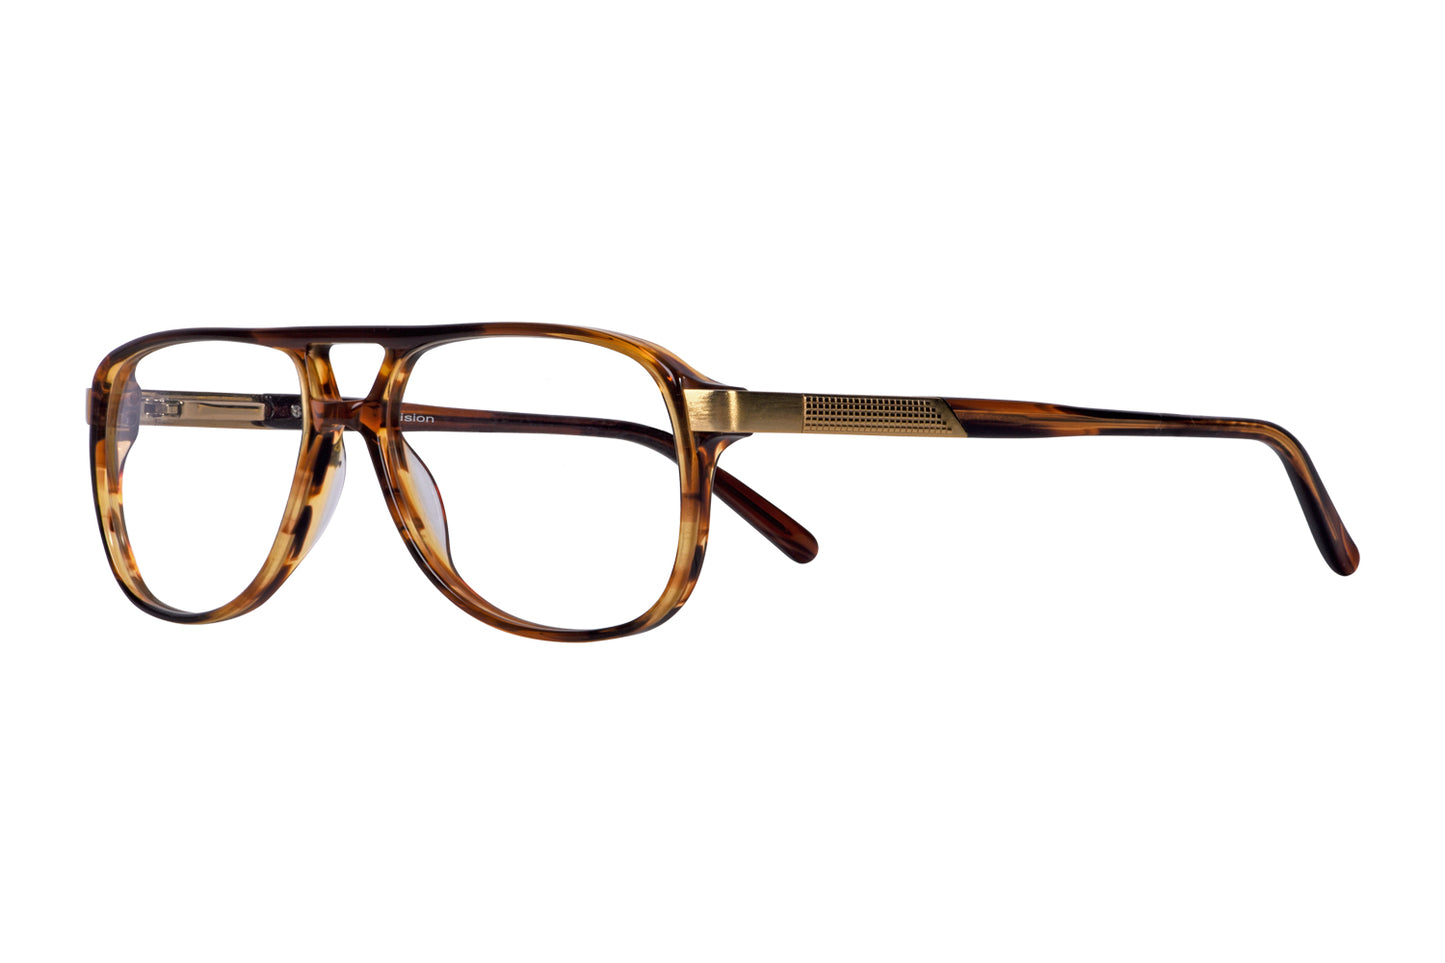 Aviator Eyeglasses Frames - For Men - Optical Store – Opticalmartpk